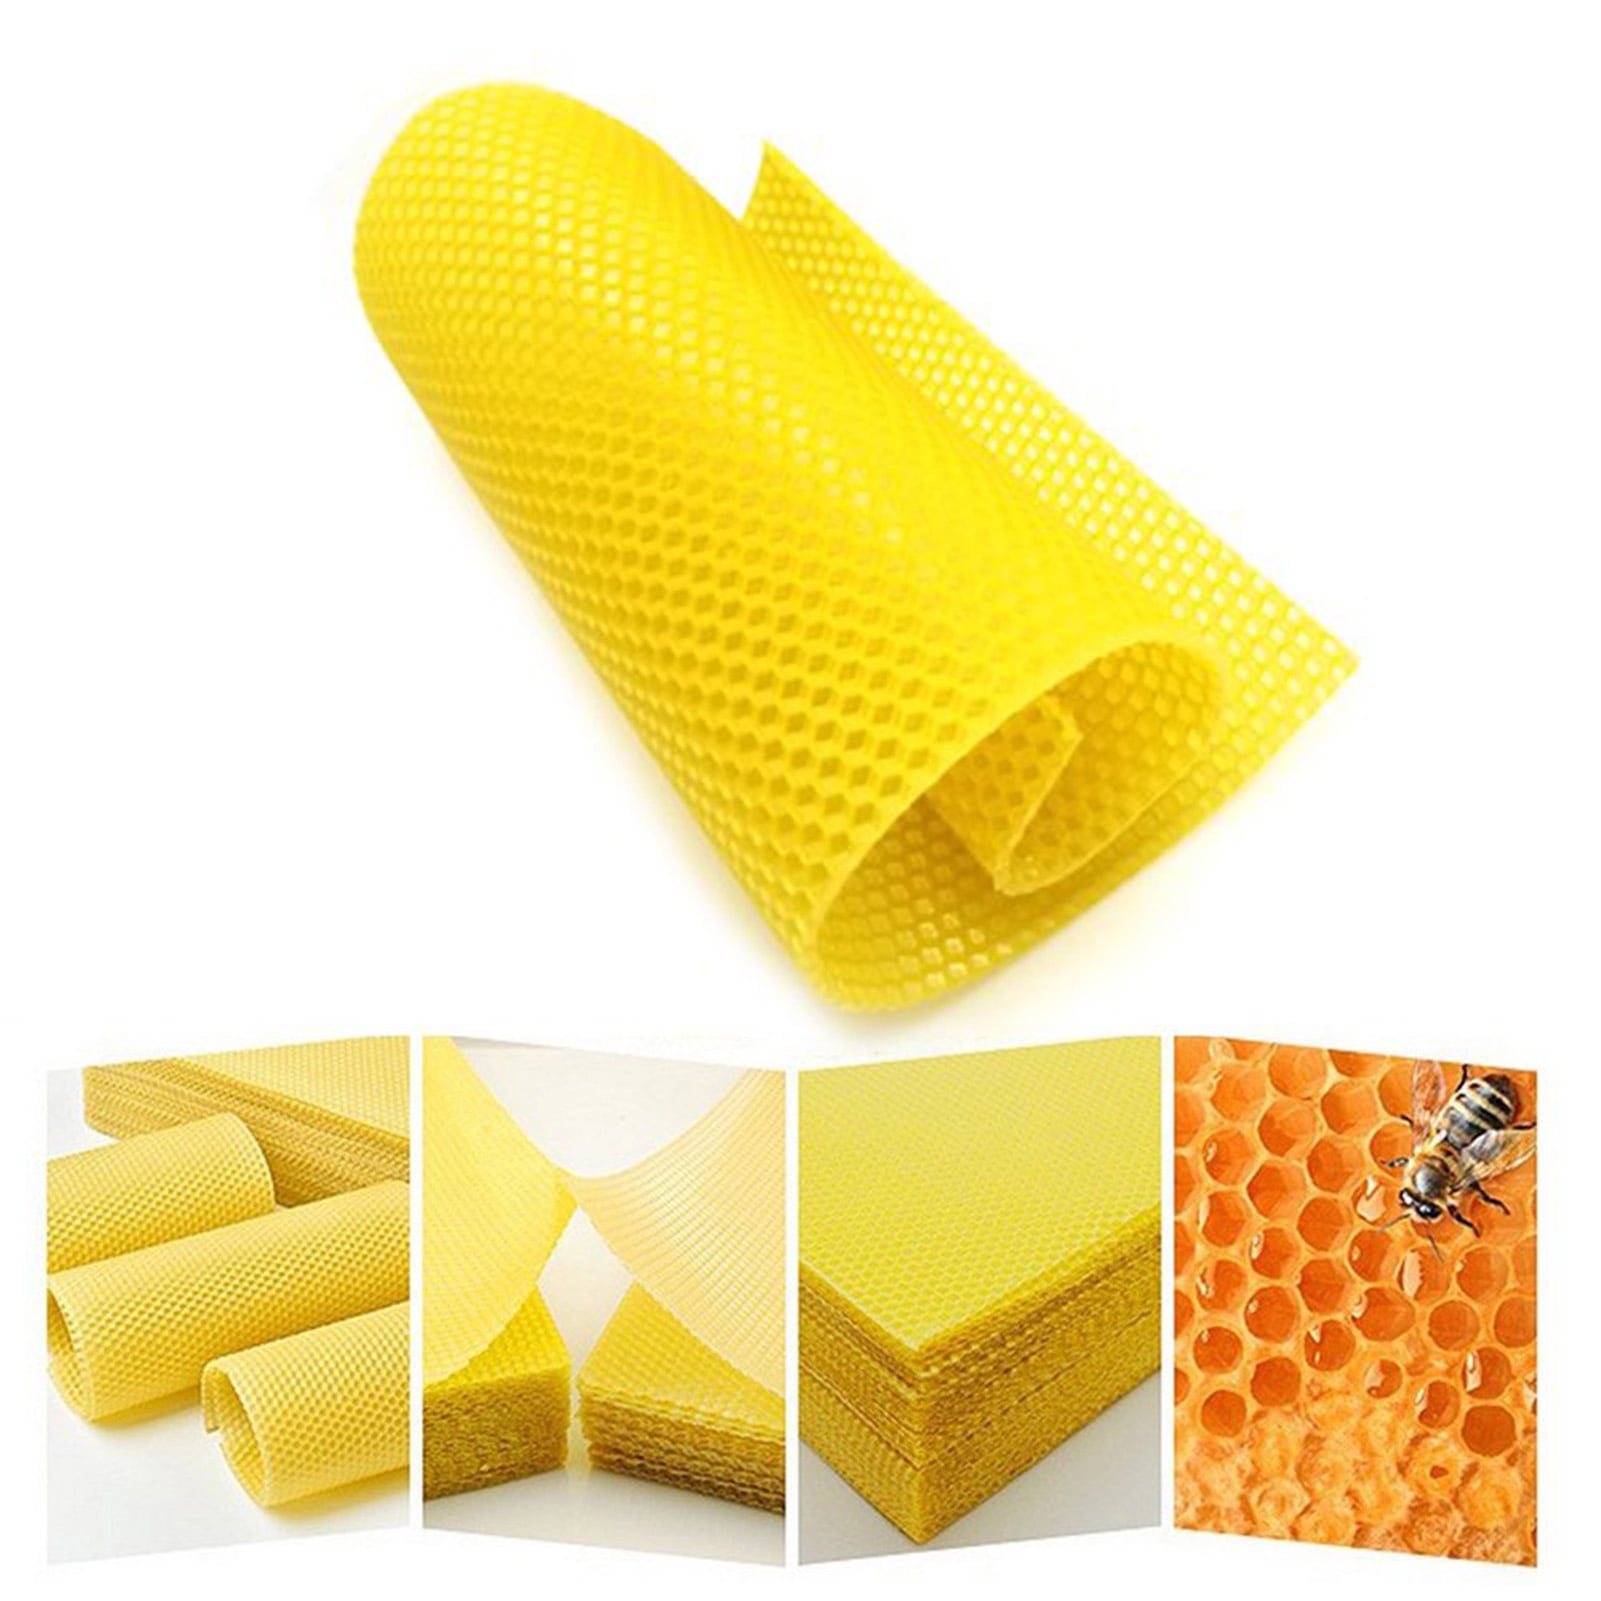 Yosoo 10Pcs Natural Beeswax Sheets Beeswax Honeycomb Sheets Wax Foundation  Bee Hives Kit Beeswax Sheets For Candles Making Furniture Floor Polishing